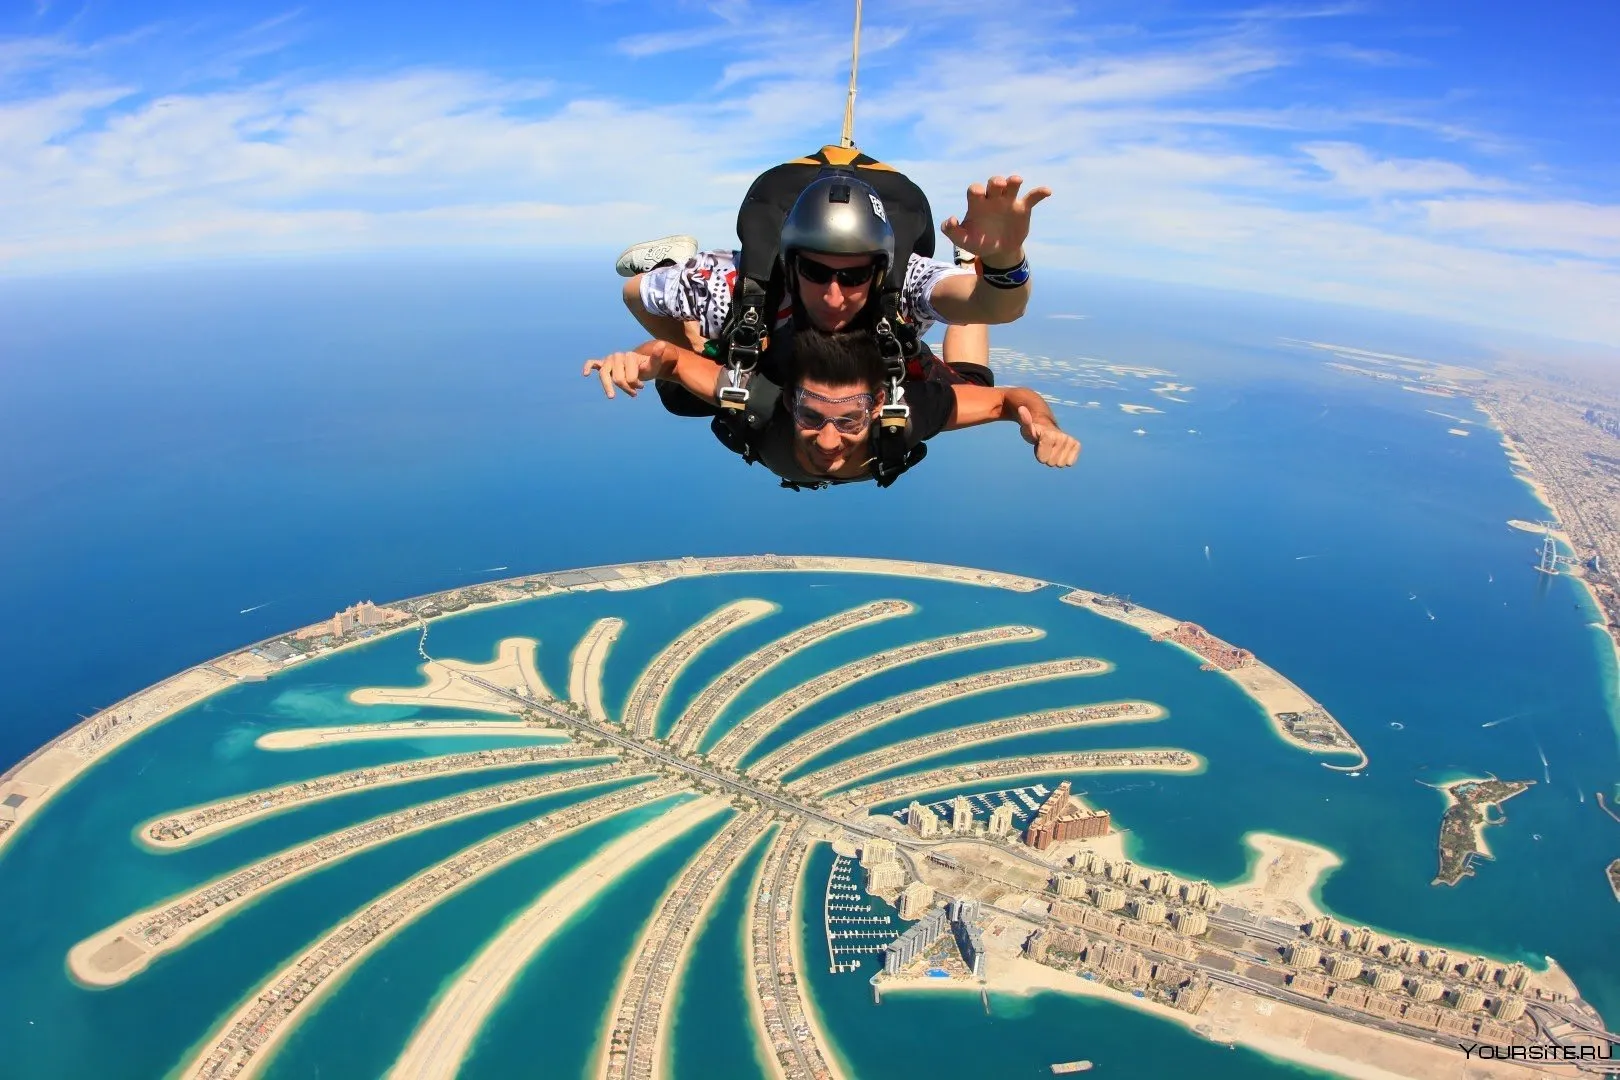 Представьте, вы свободно паритe в воздухе над Дубаем, наслаждаясь потрясающими видами города во время прыжка с парашютом.